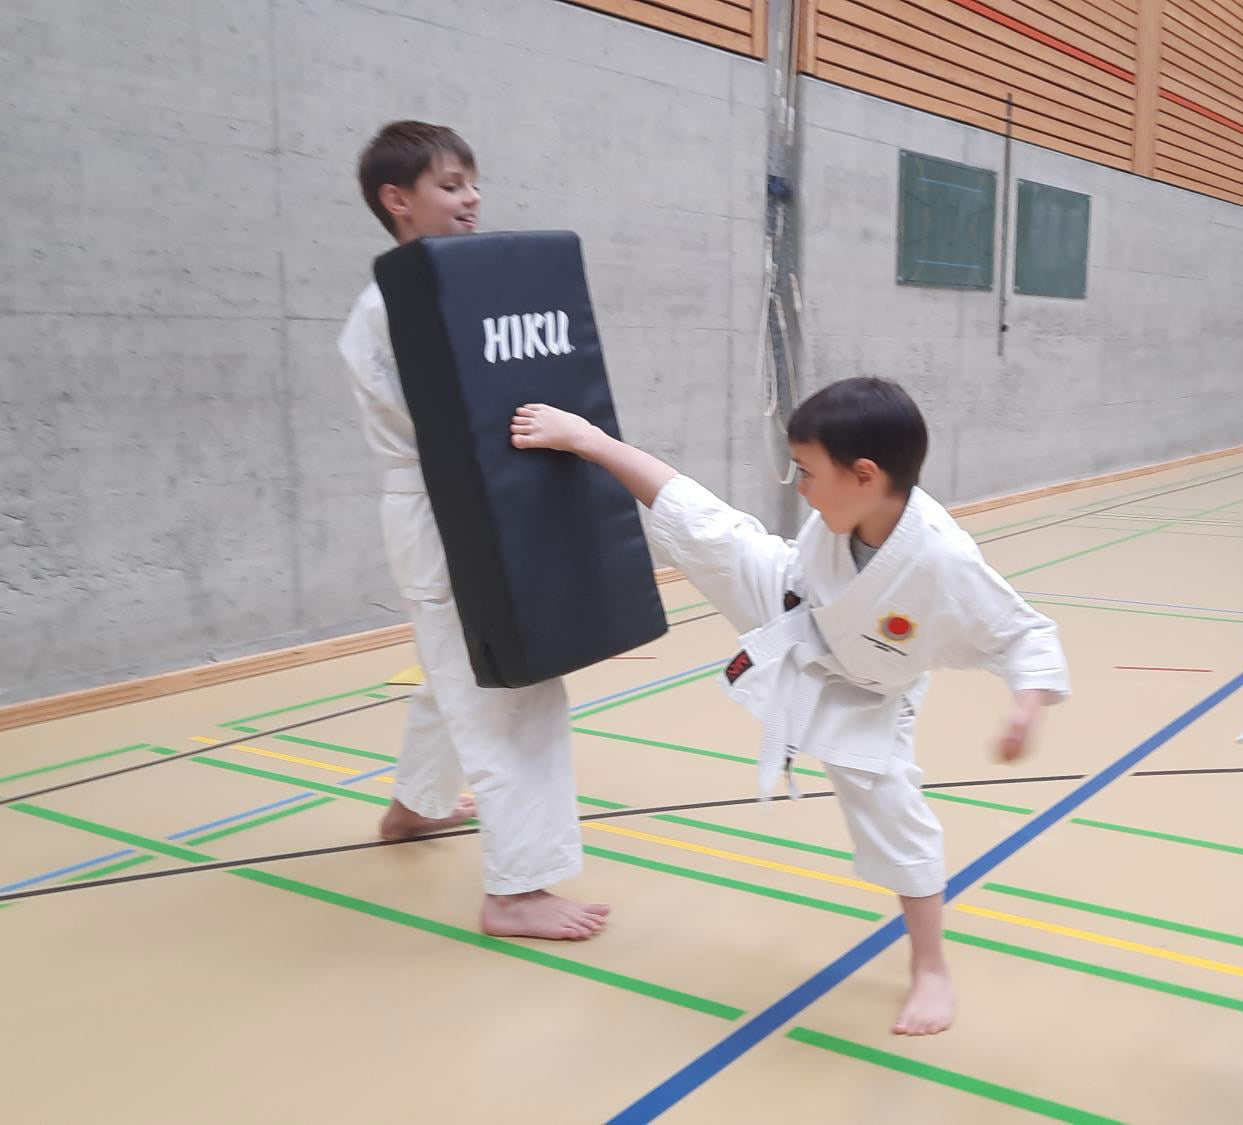 Kai aus Suhr Karate für Kinder Kampfsportschule Aarau